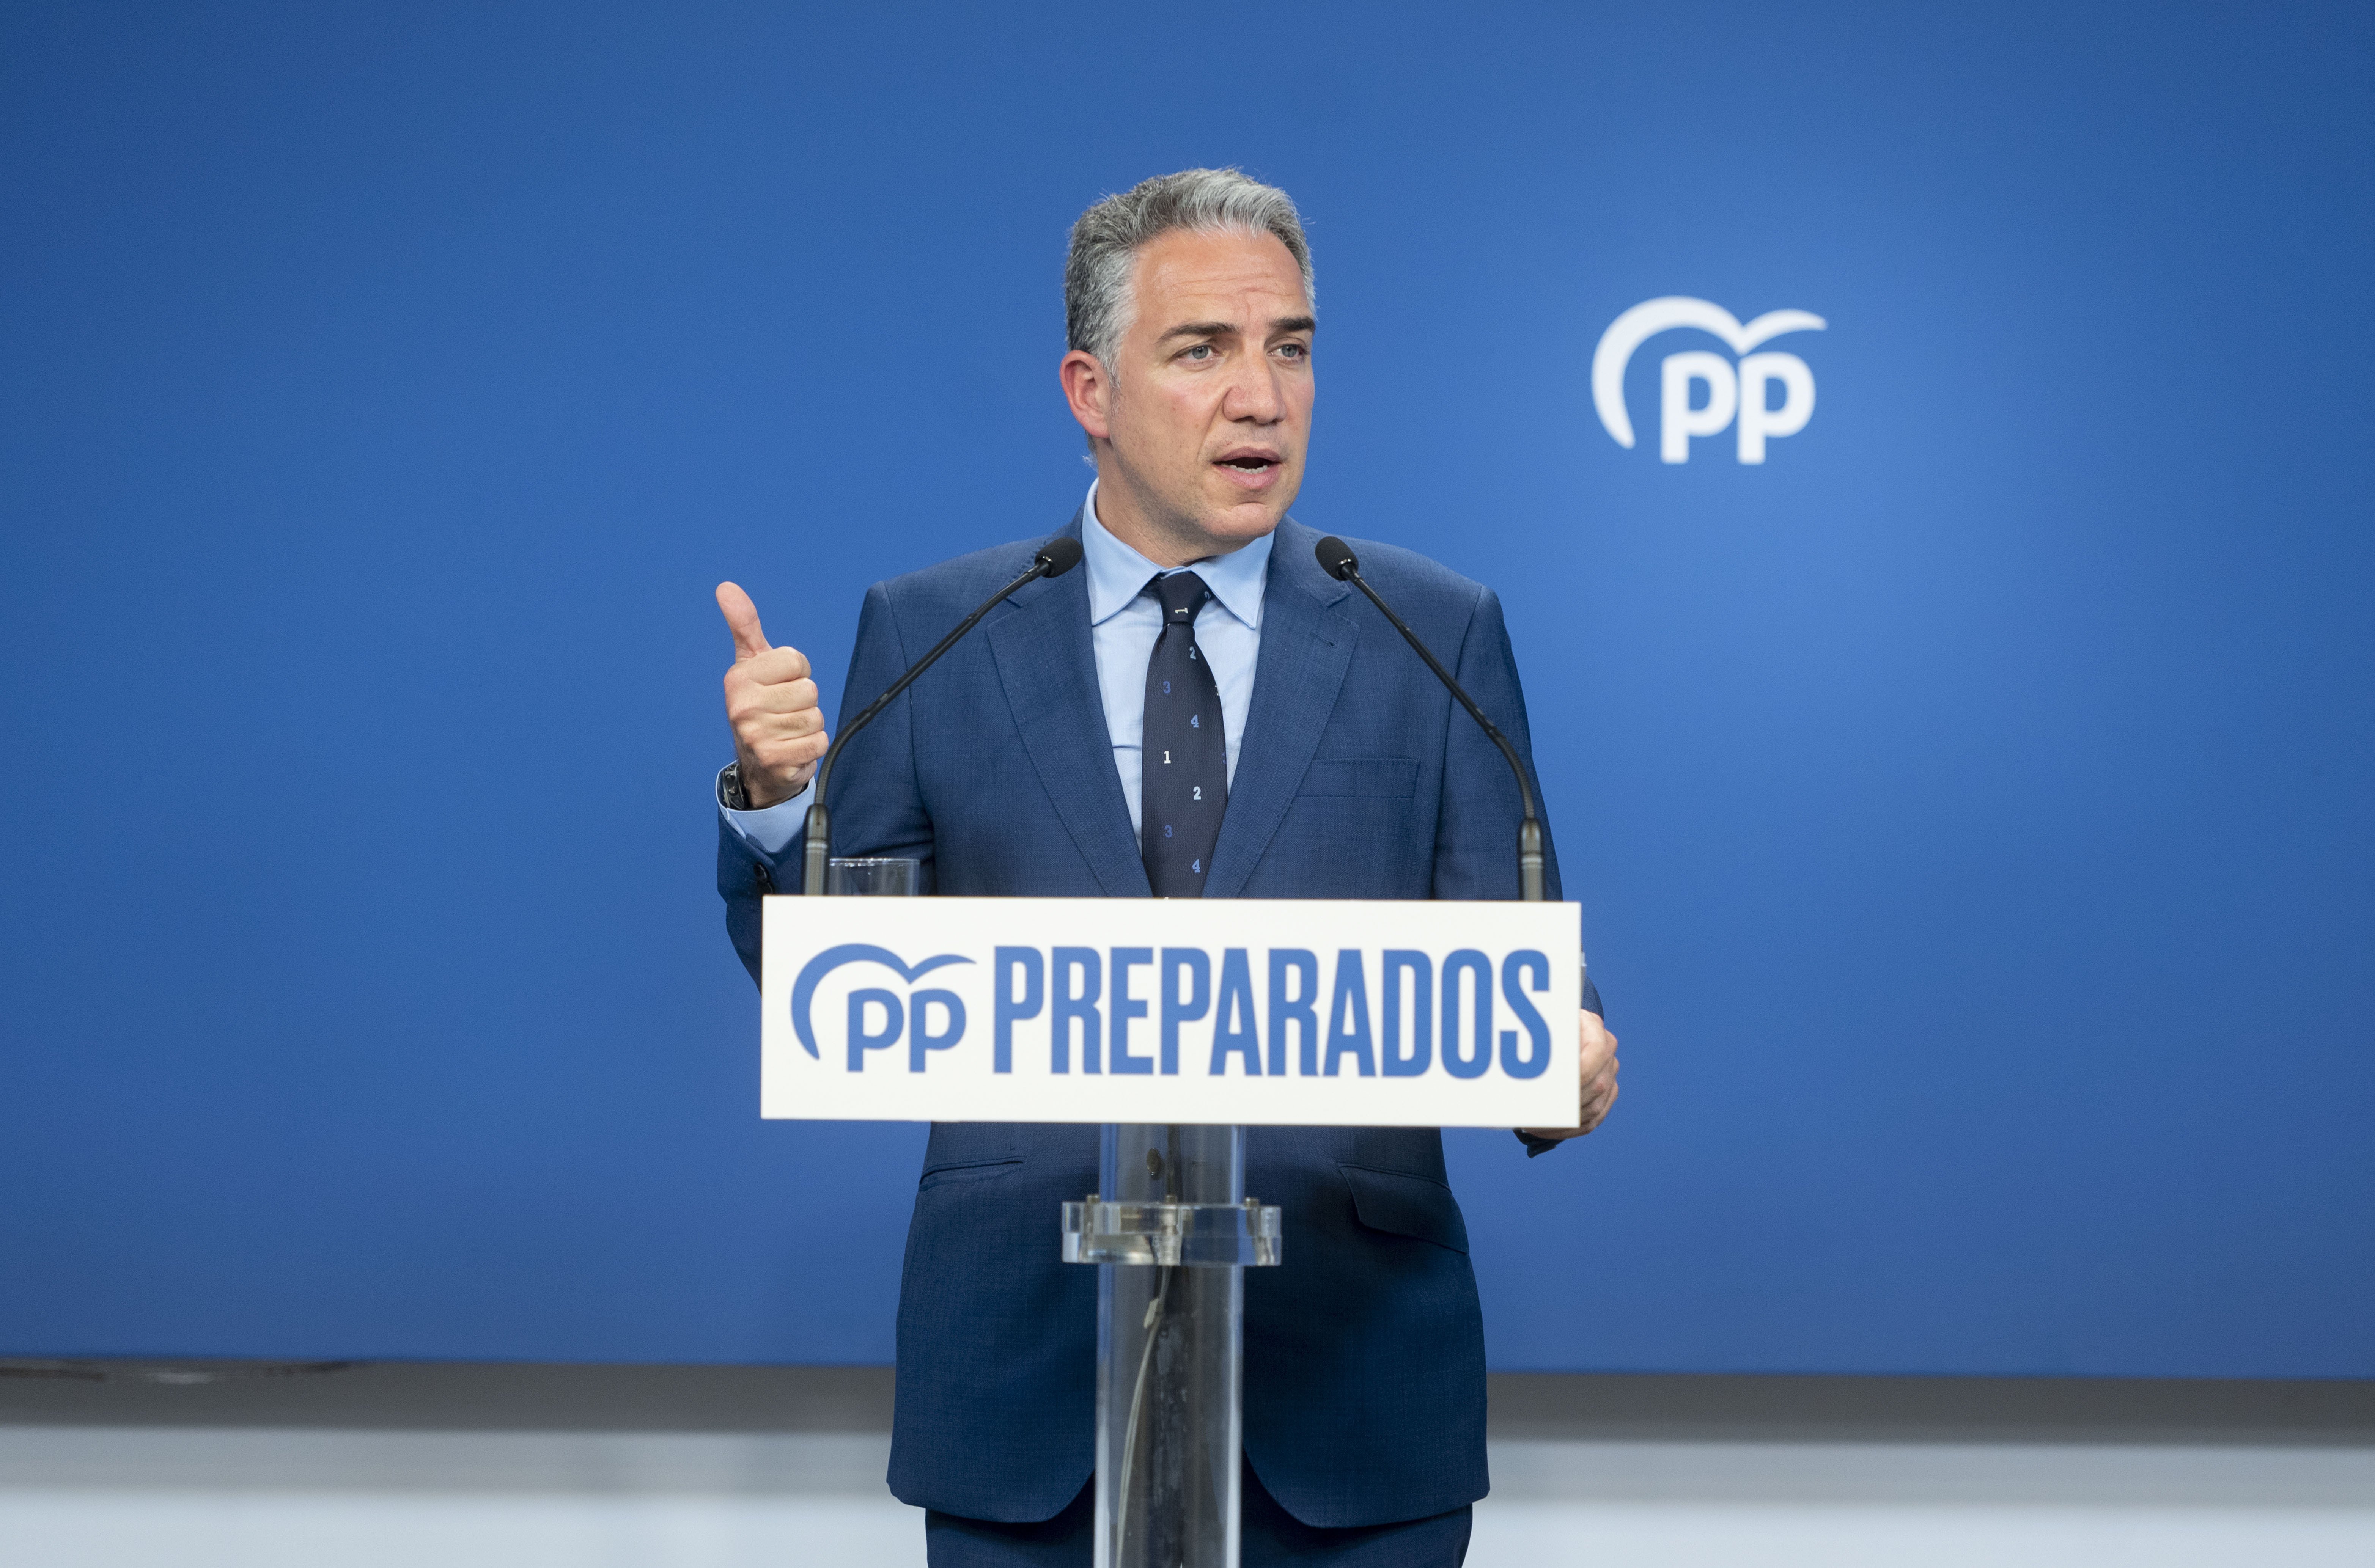 El PP votará en contra del decreto energético si La Moncloa no retira "frivolidades" del texto